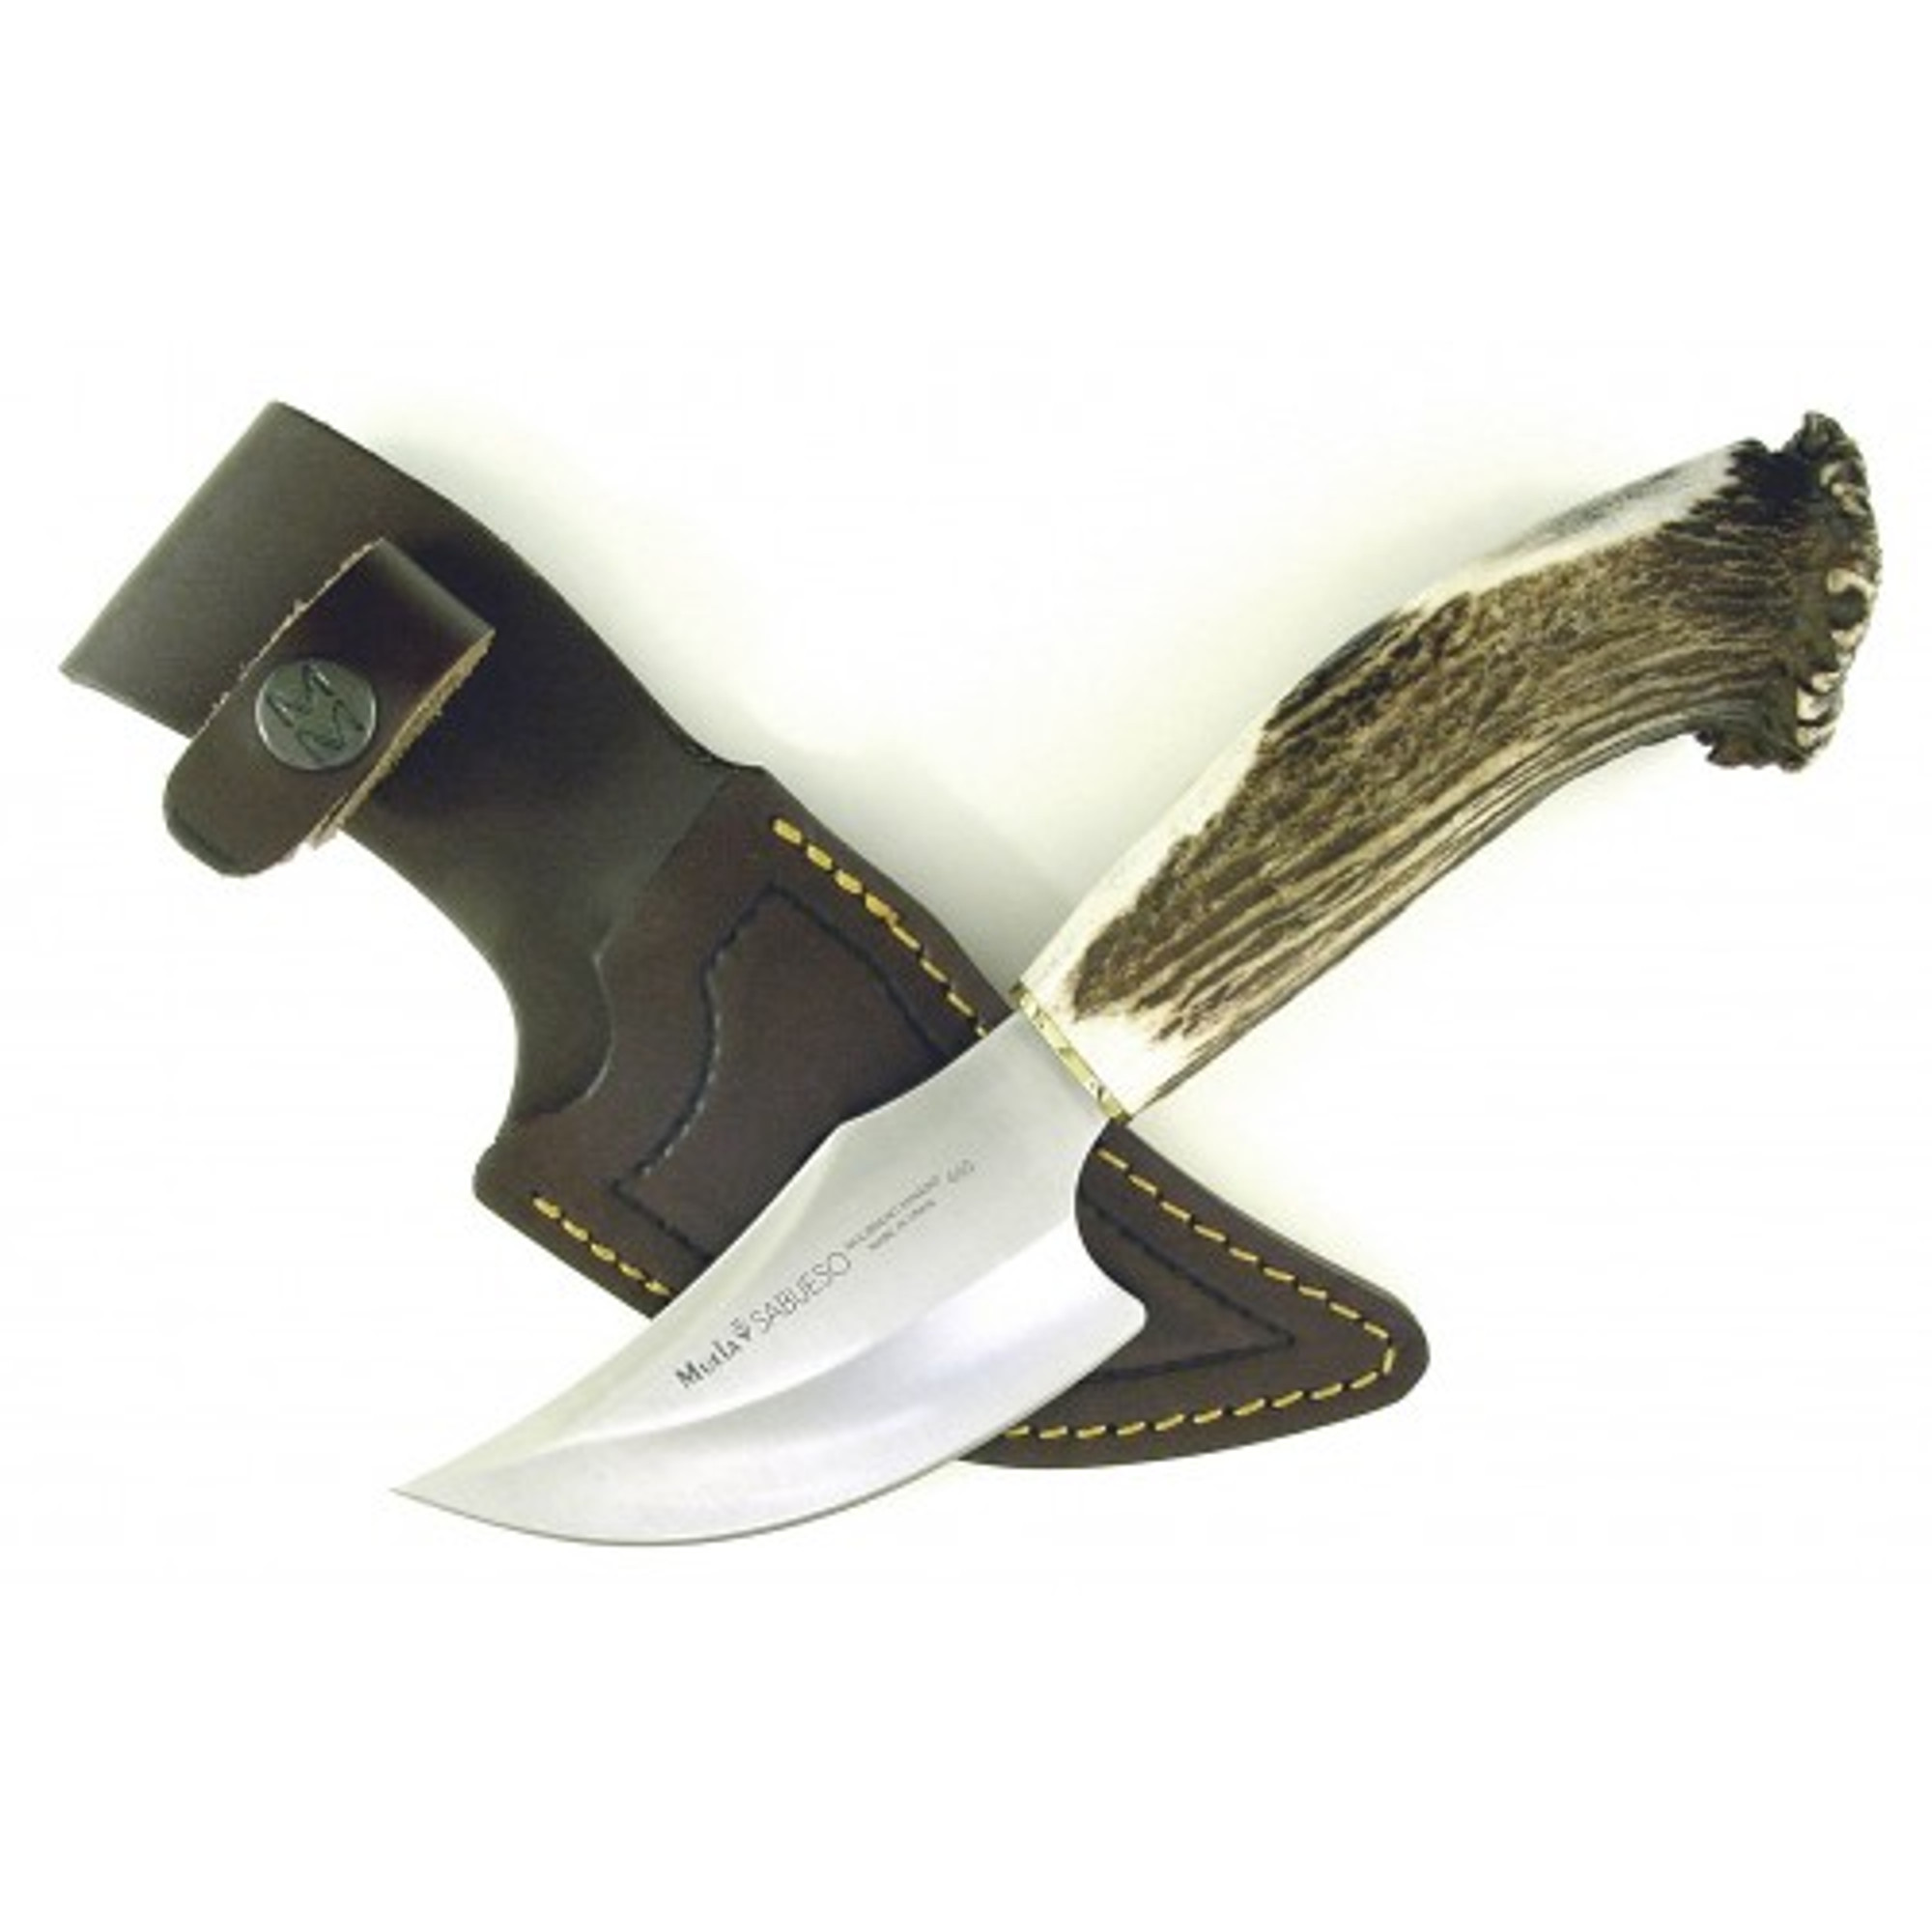 MUELA SABUESO-11S, X50CrMoV15, 4-3/8" Fixed Blade Hunting Knife, Crown Deer Horn Handle